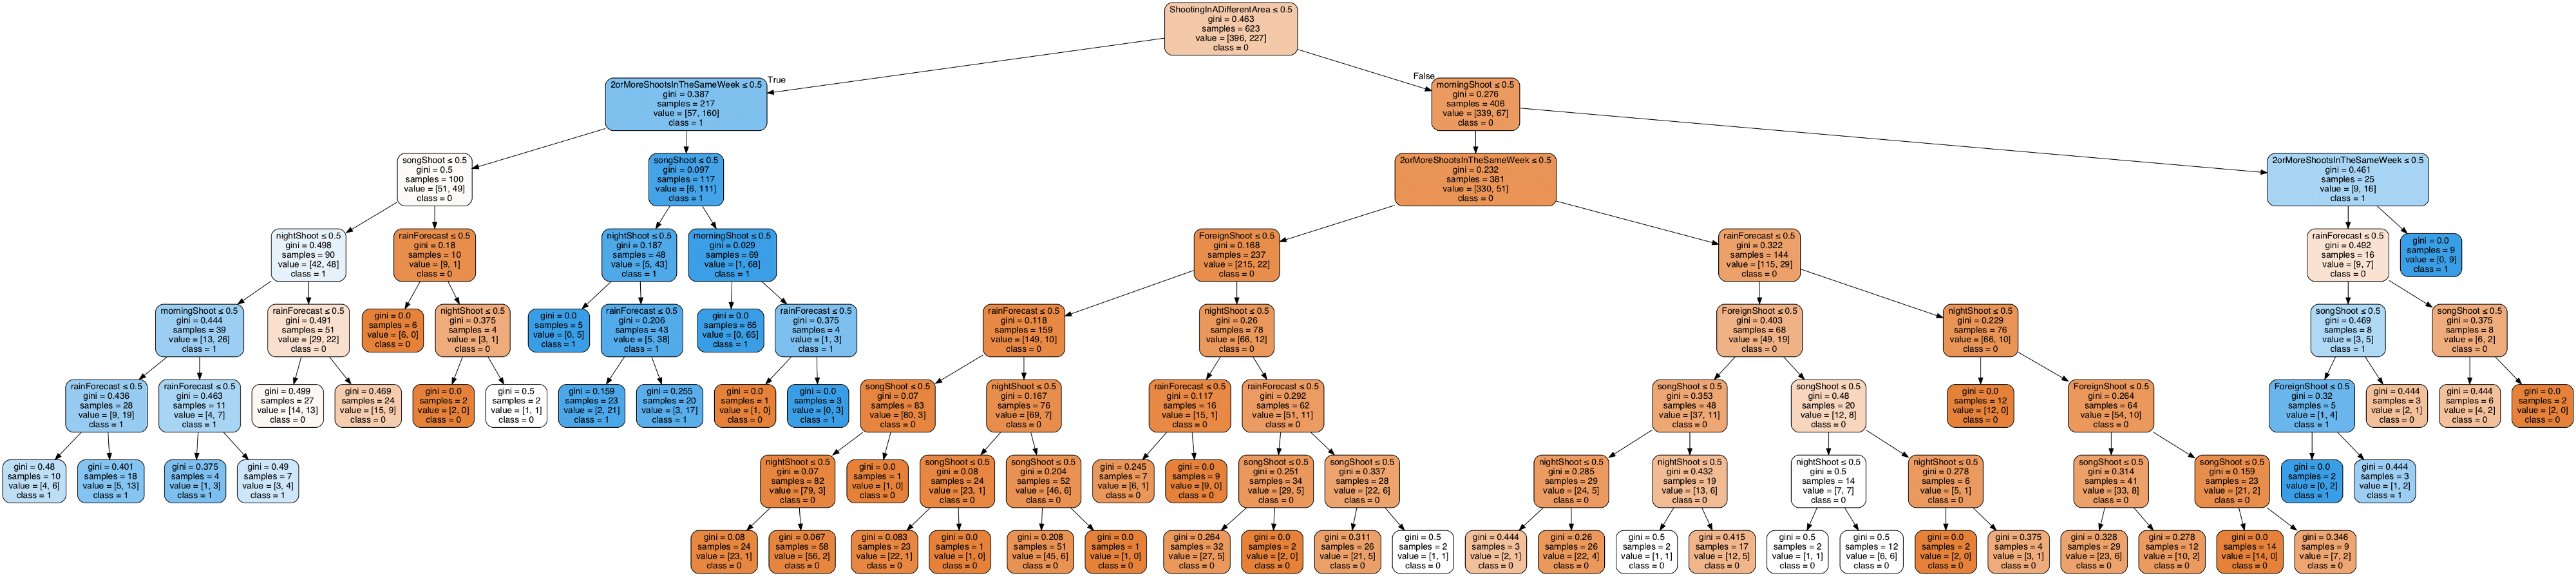 tech decision tree